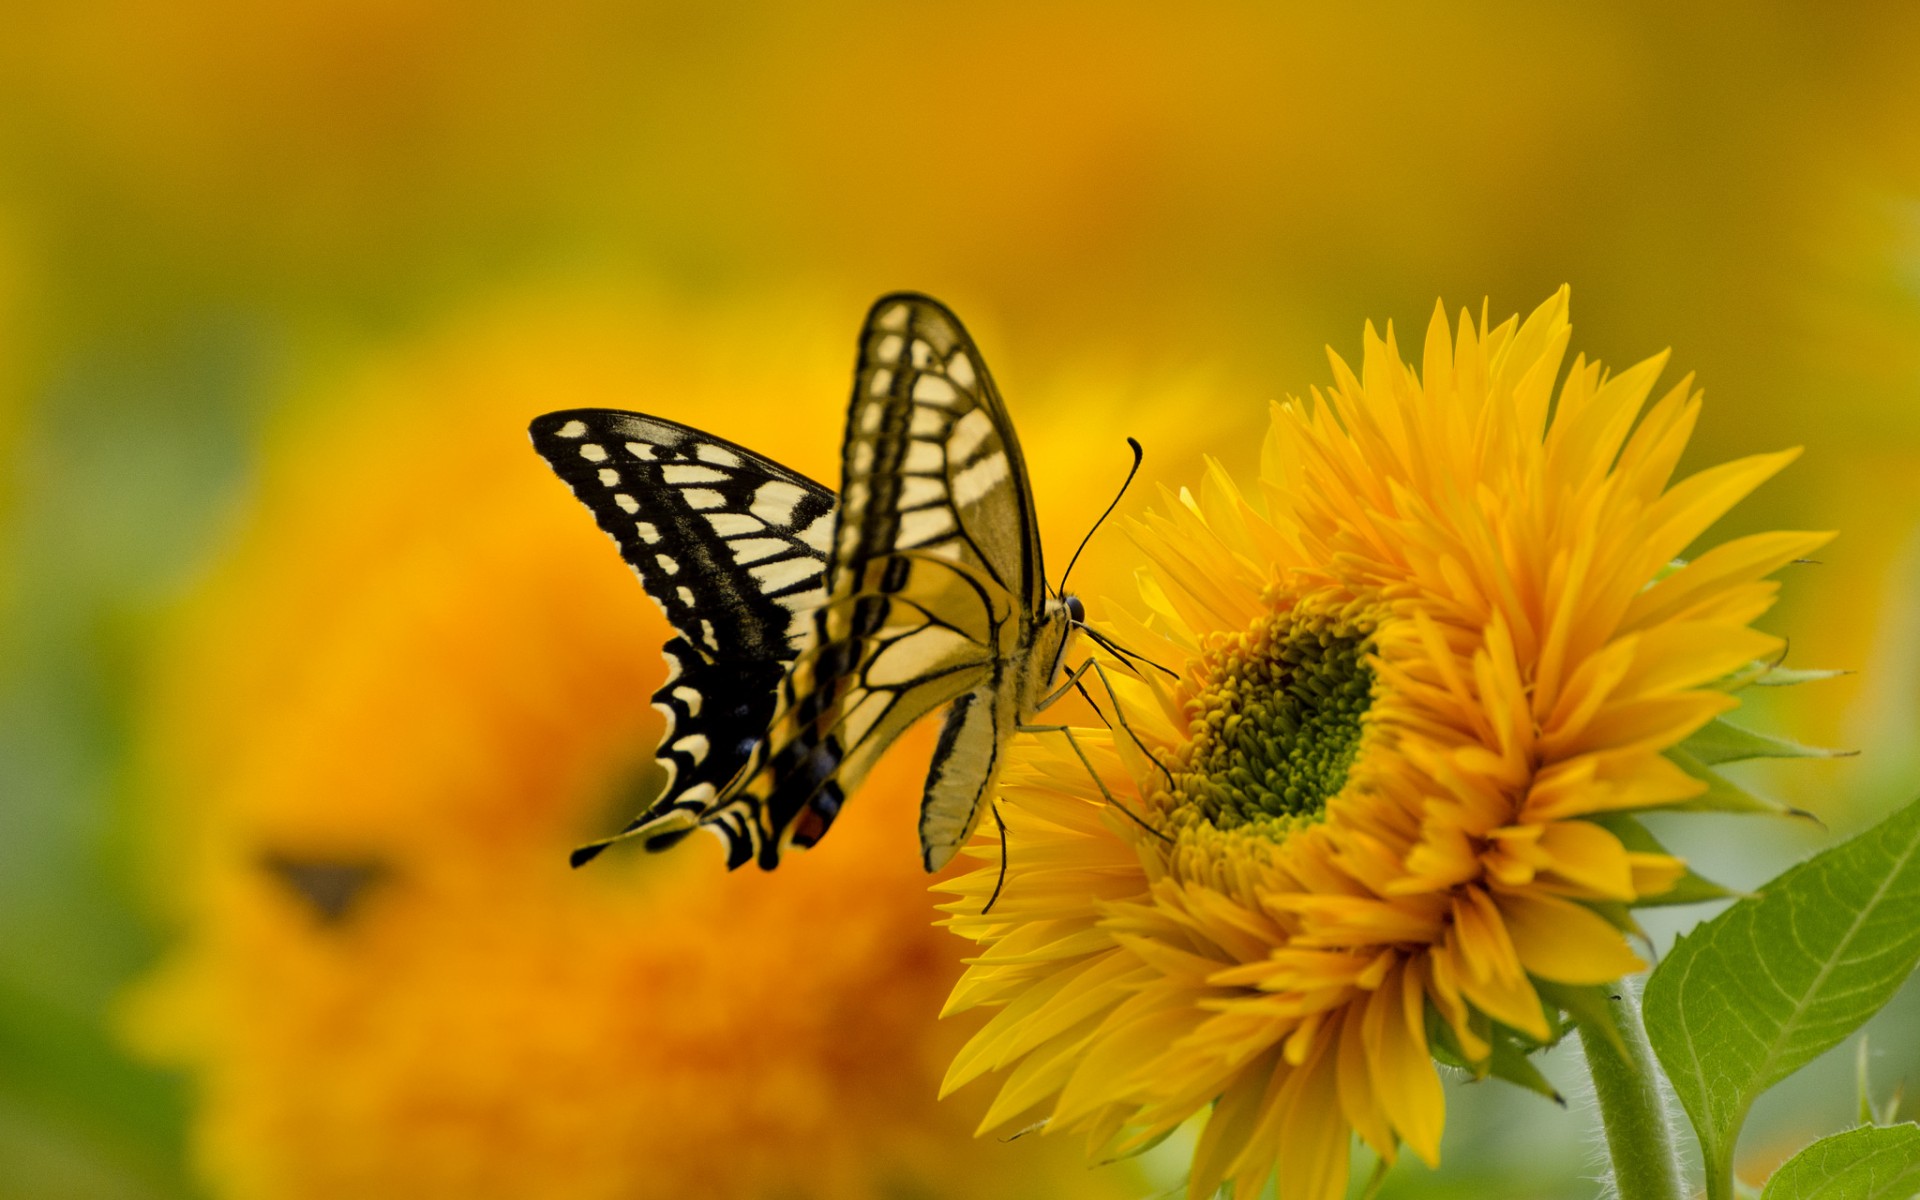 Скачать обои бесплатно Животные, Цветок, Насекомое, Бабочка, Желтый Цветок картинка на рабочий стол ПК